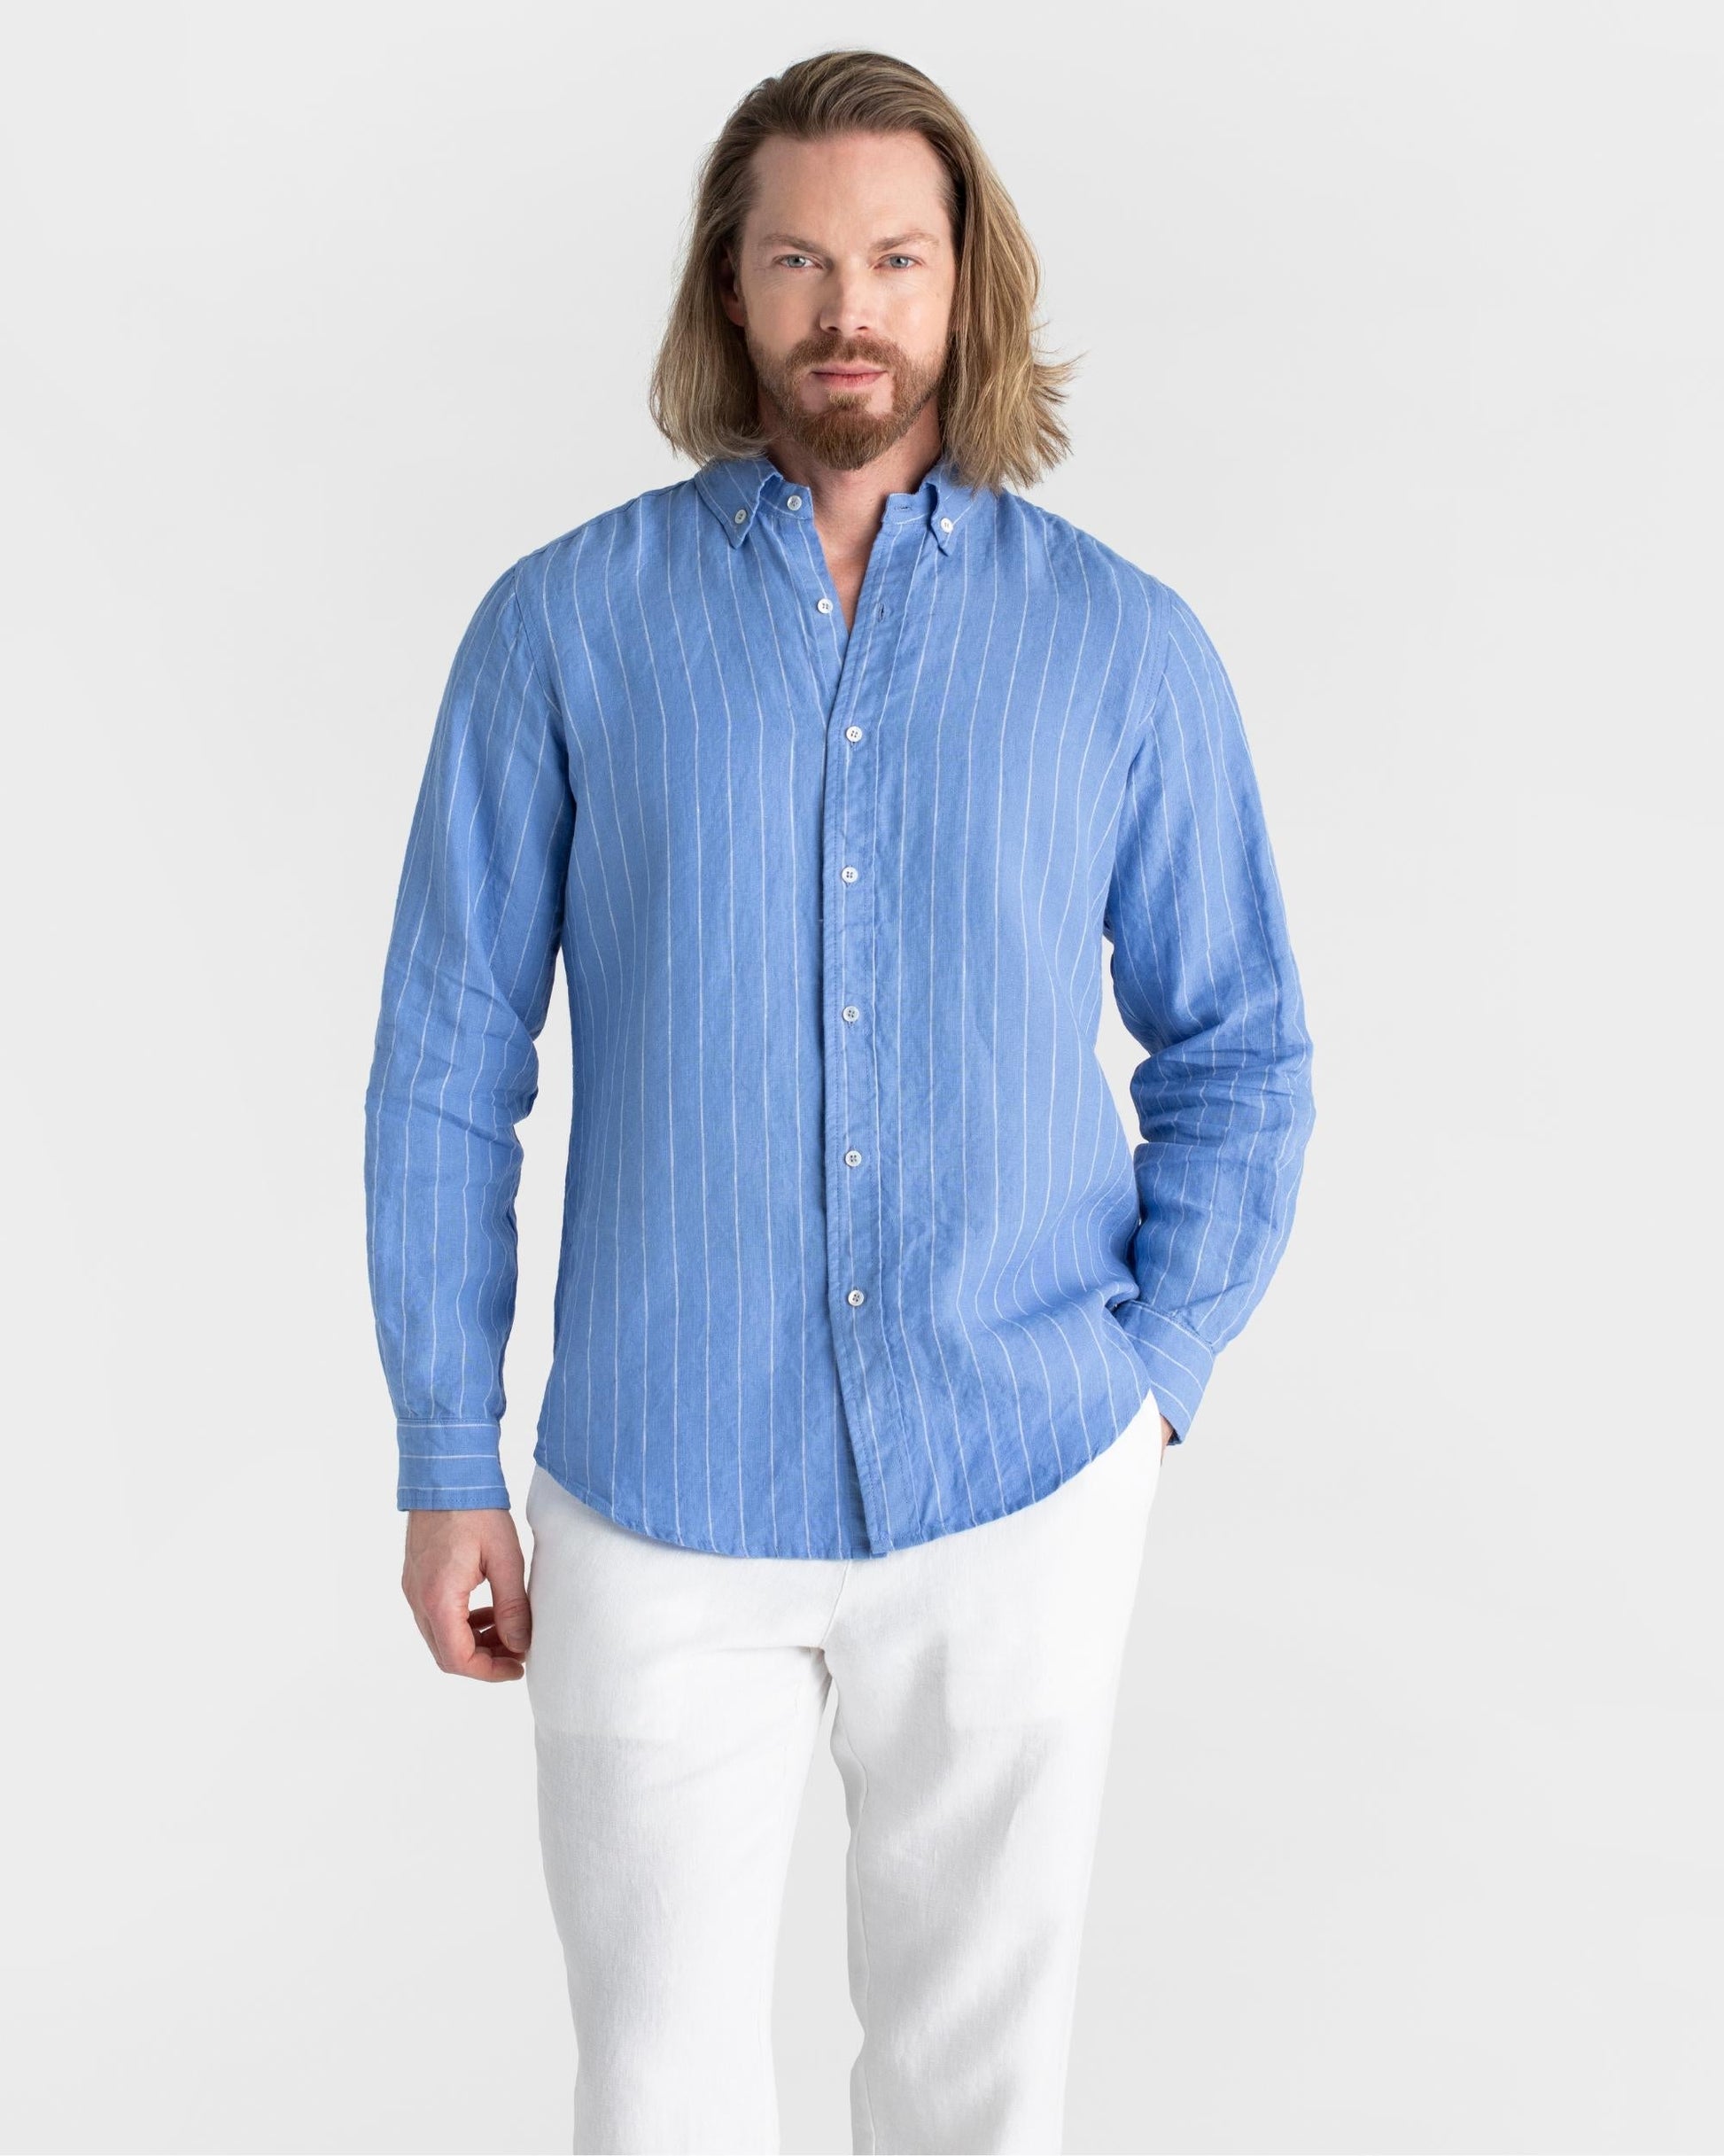 Classic men's linen shirt SINTRA in Blue striped - MagicLinen modelBoxOn